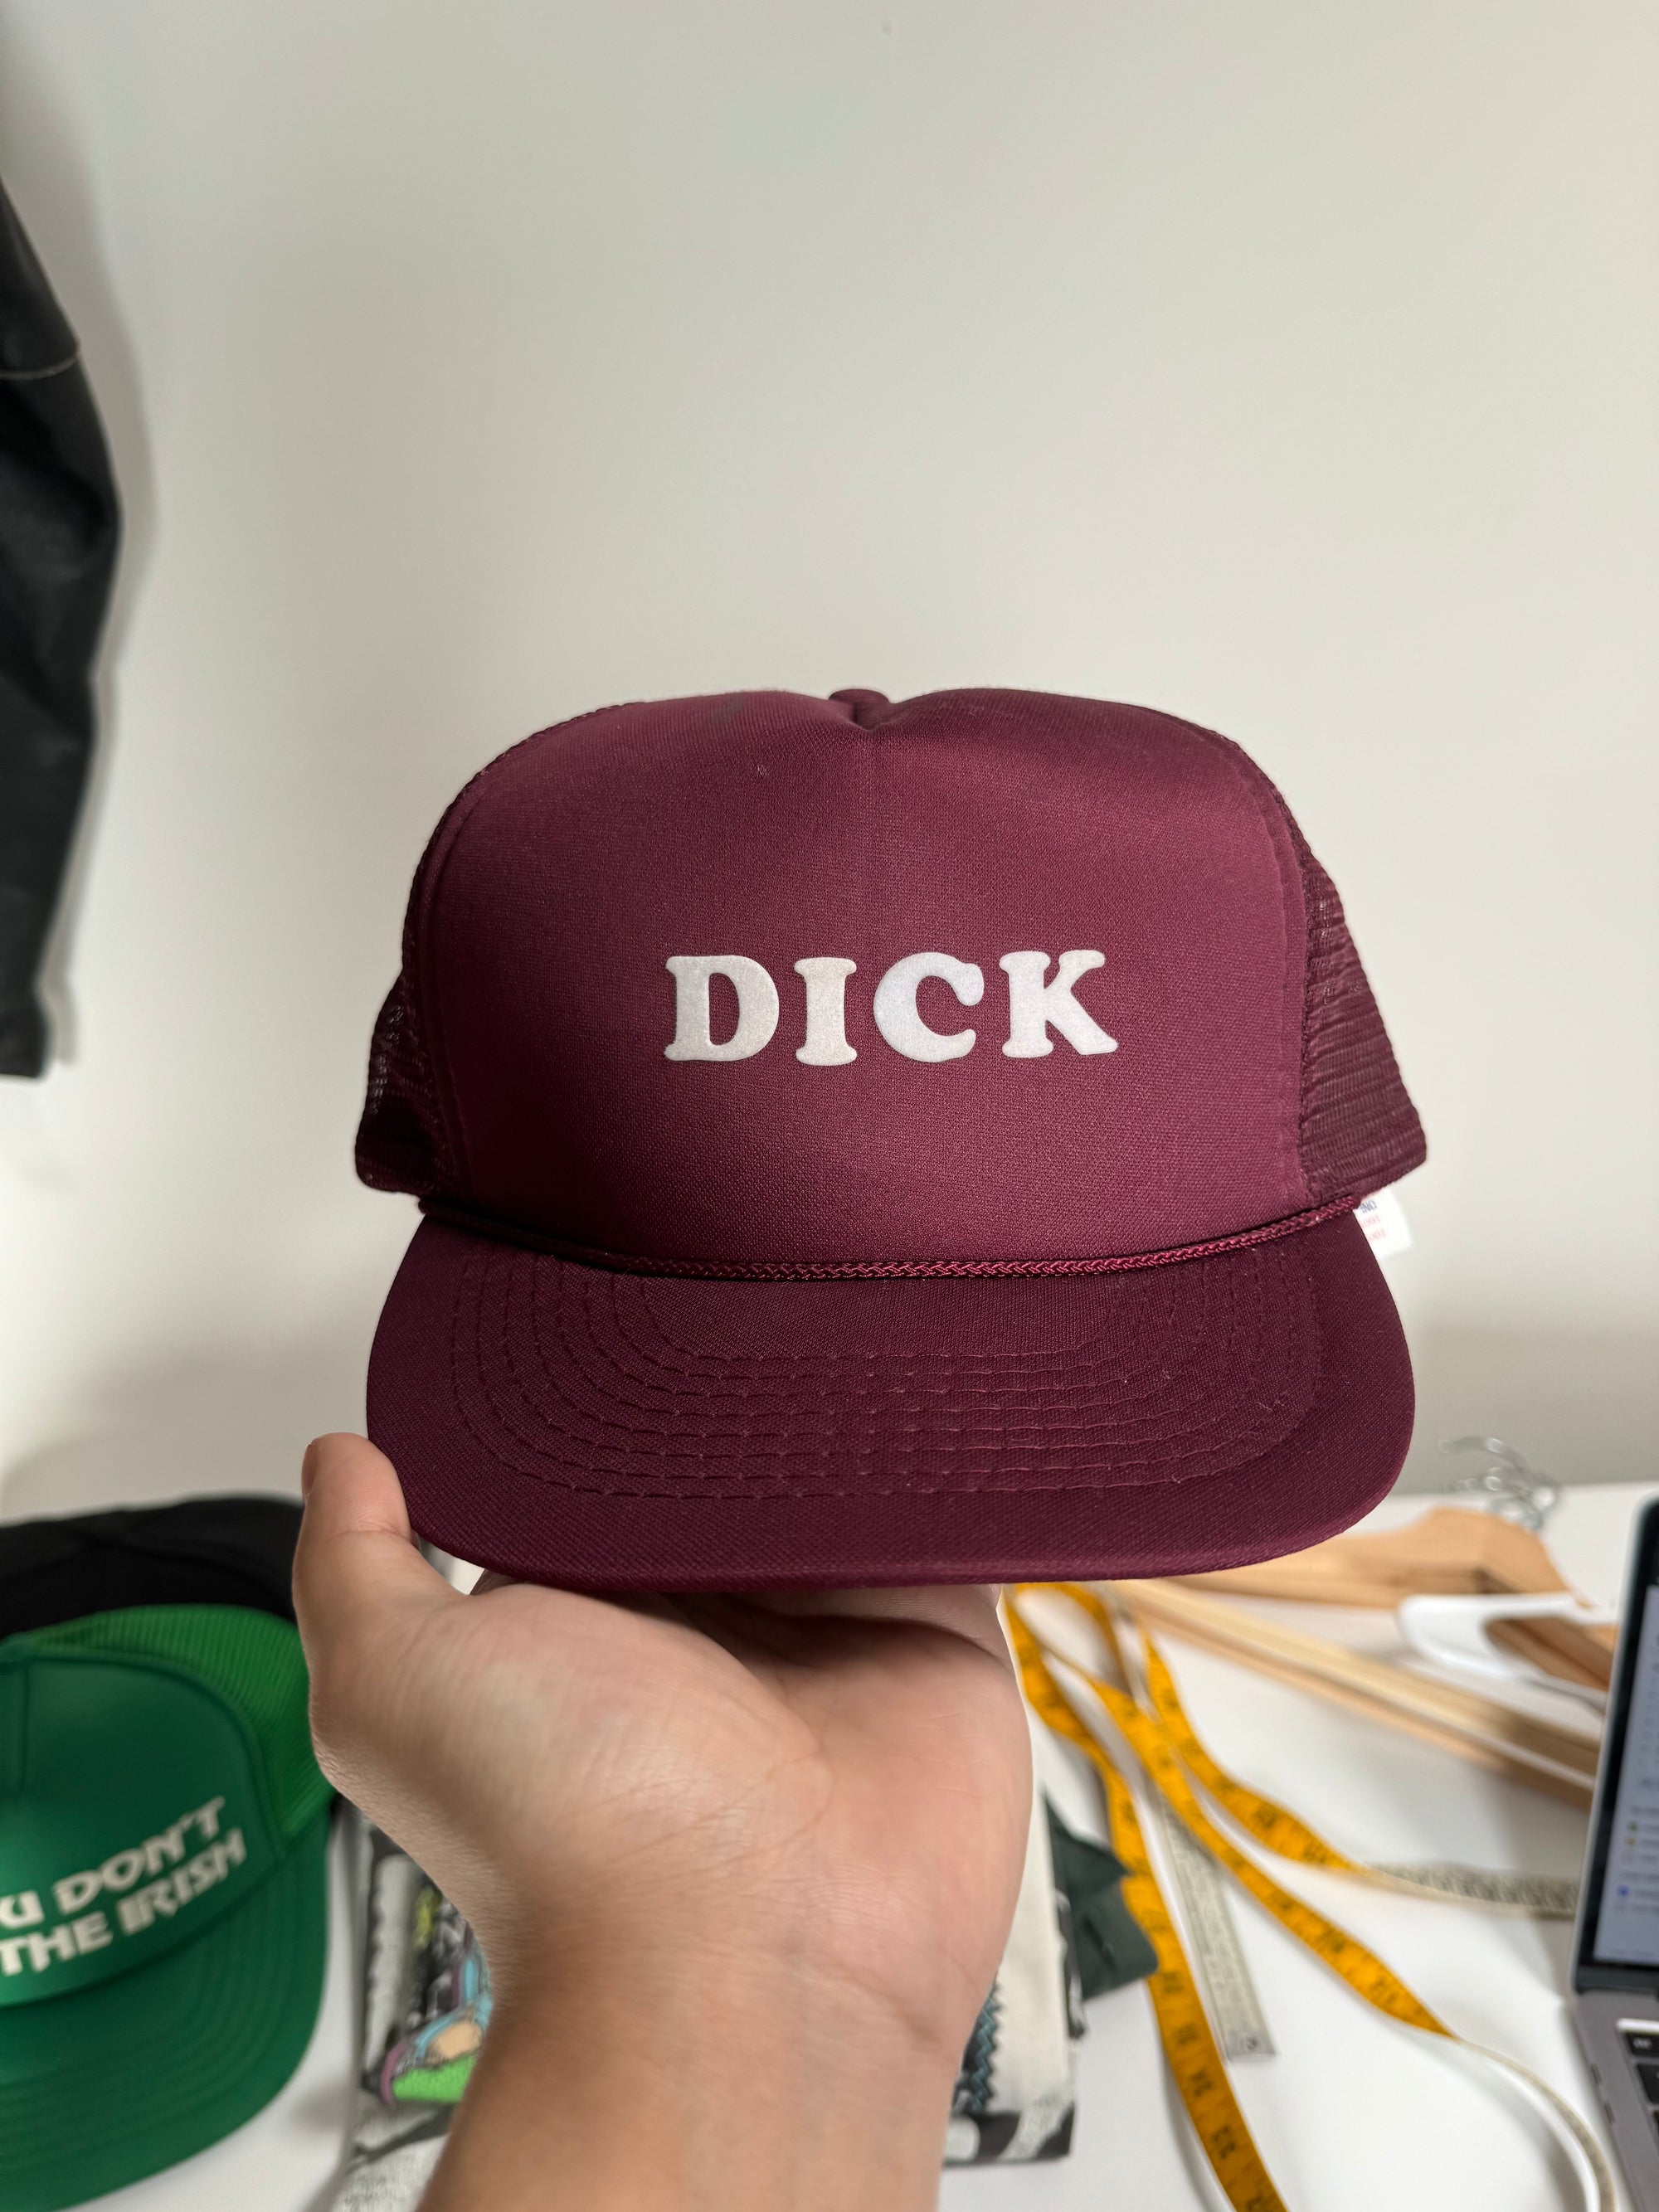 1980s “Dick” Trucker Hat